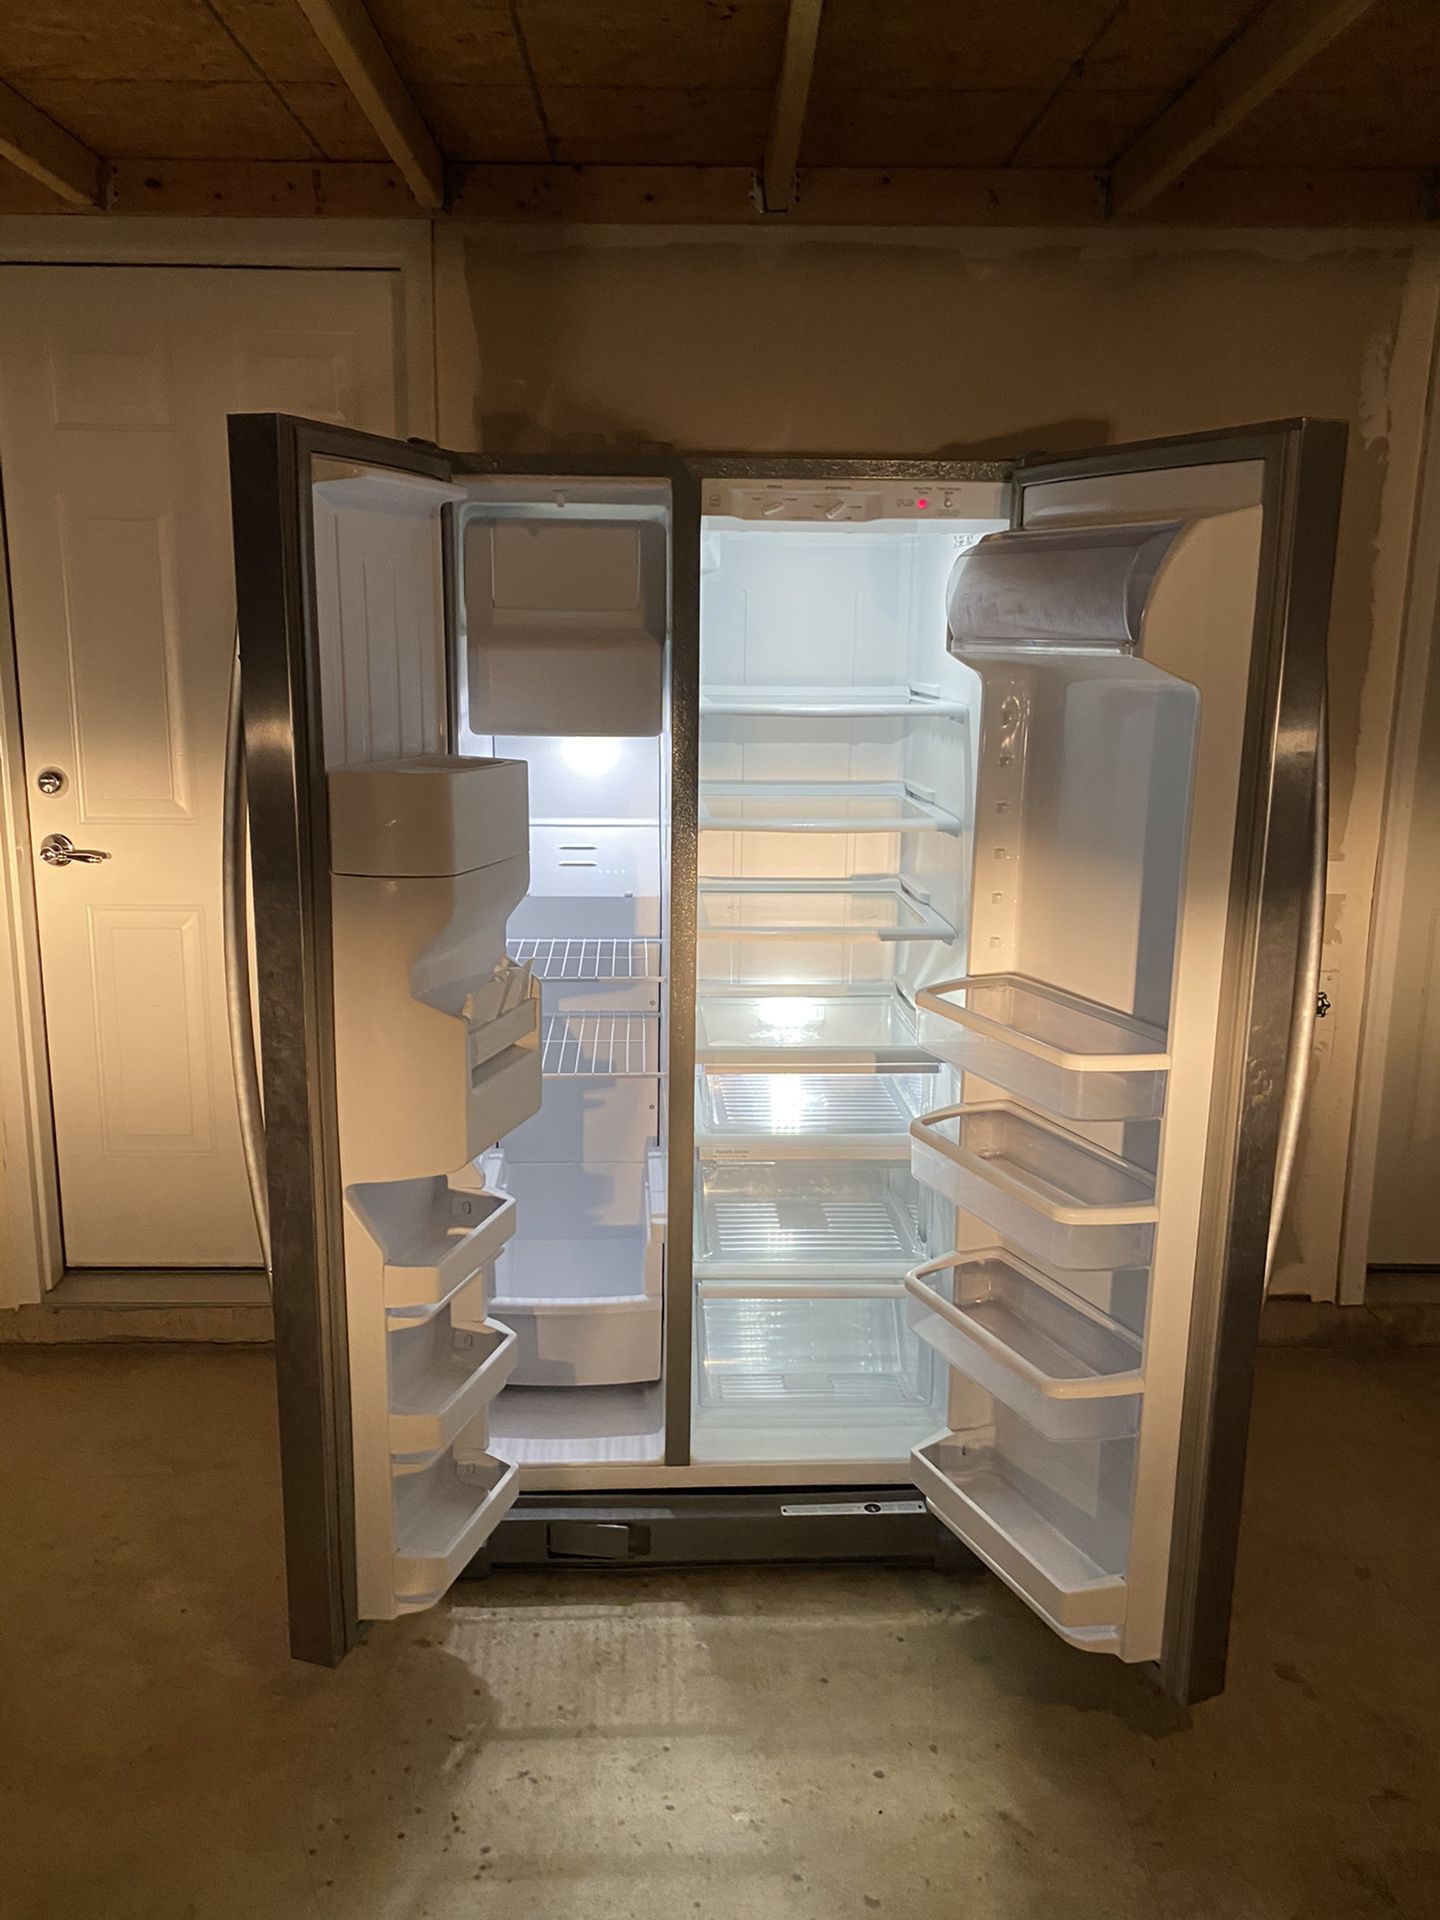 Refrigerator / Freezer 2 Doors